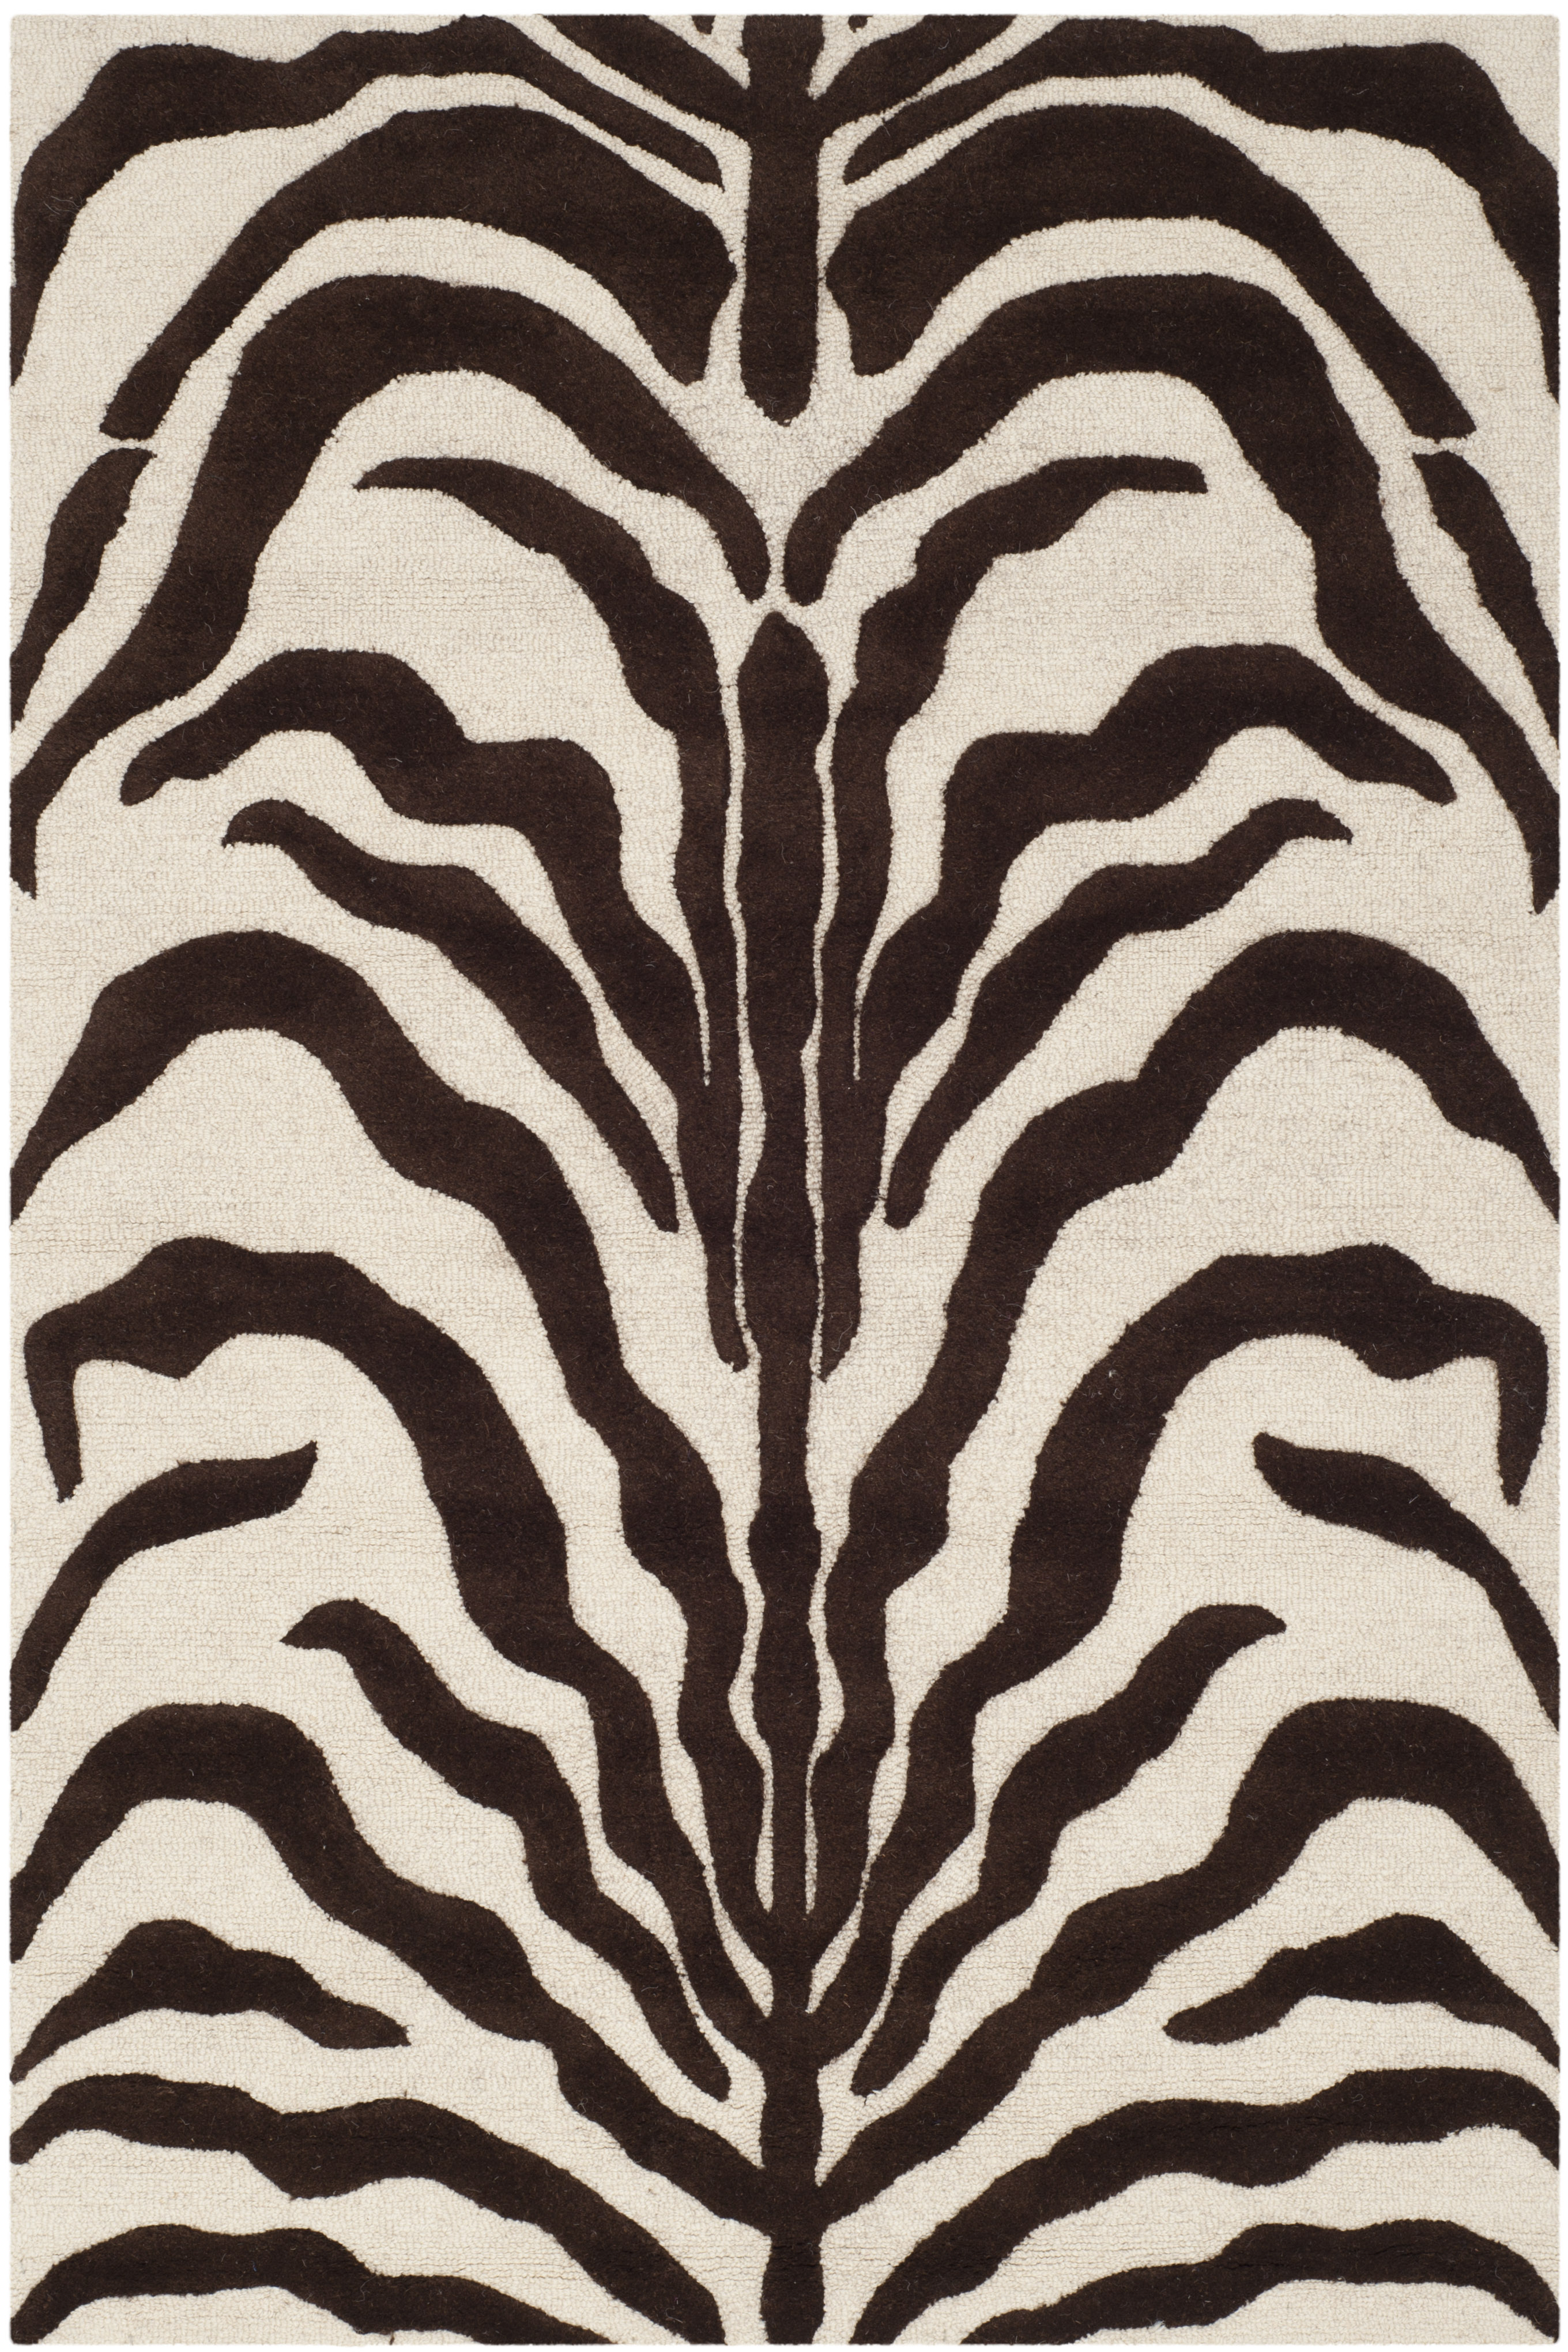 Tapis de salon interieur en  ivoire & marron, 122 x 183 cm